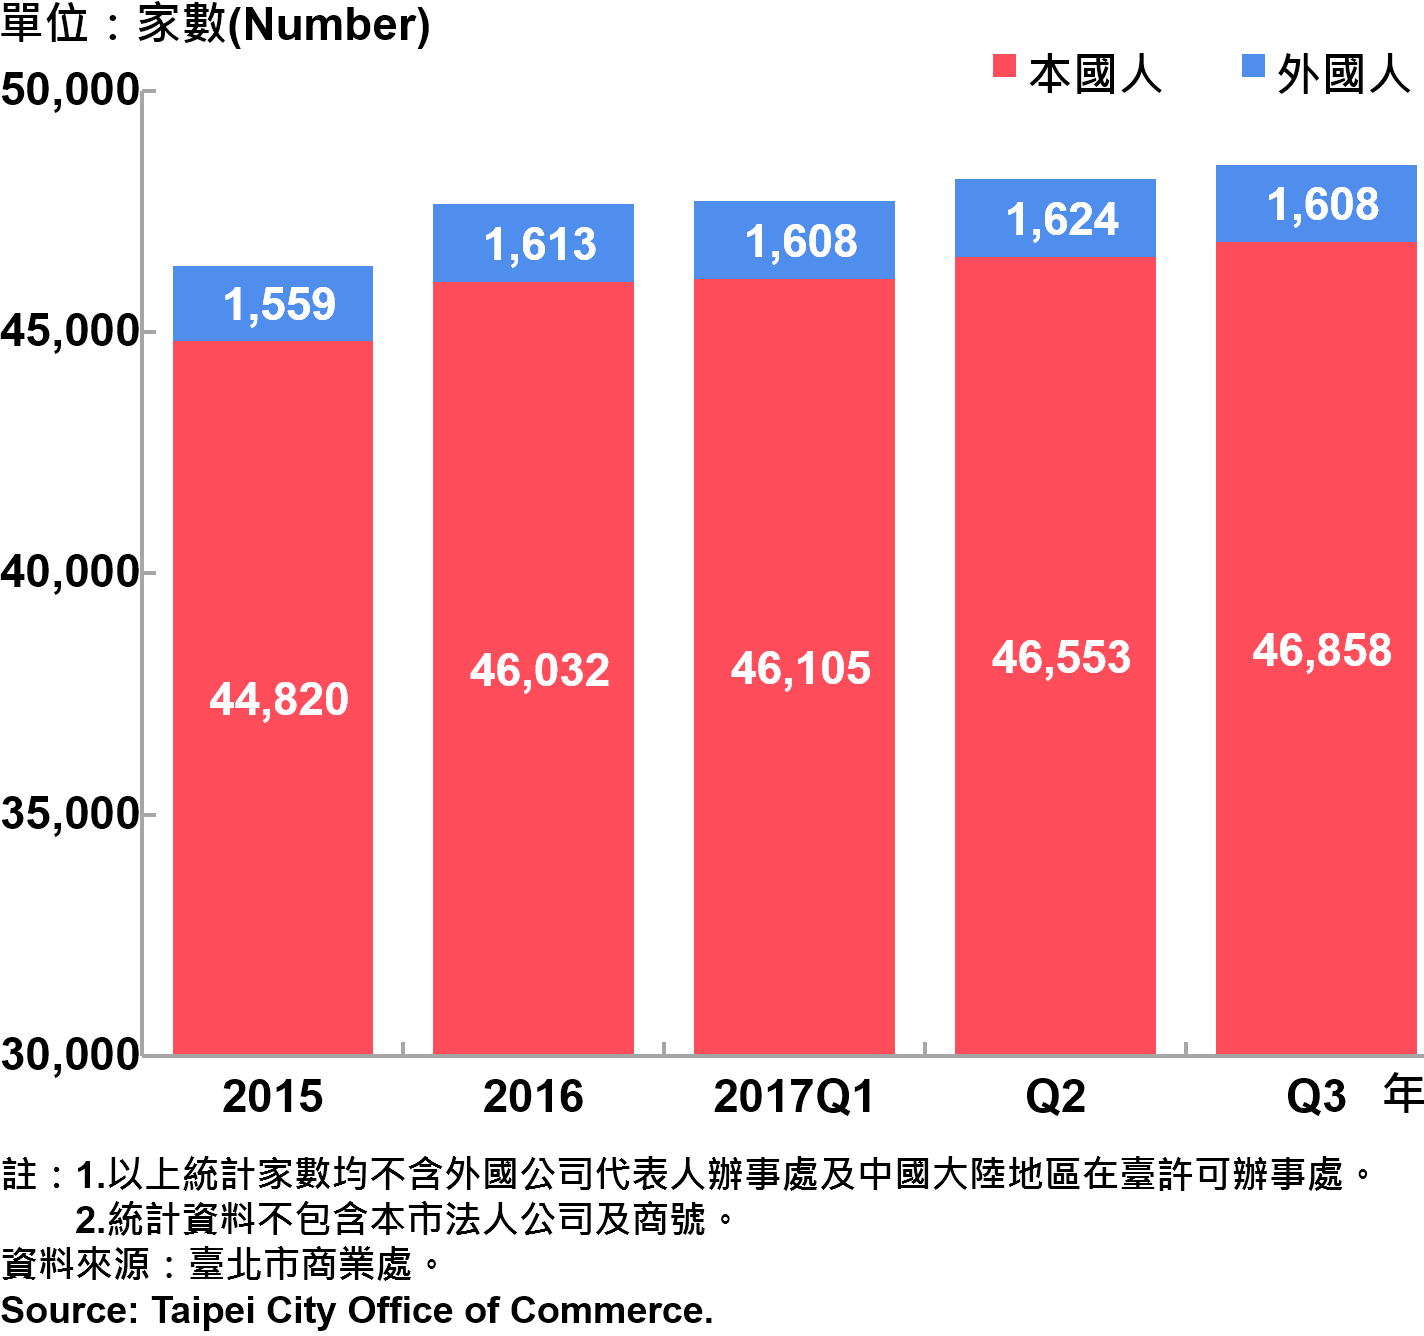 圖21、臺北市公司青創負責人為本國人與外國人分布情形—依現存家數—2017Q3 Responsible Person of Newly Registered Companies In Taipei City by Nationality - Number of Current—2017Q3